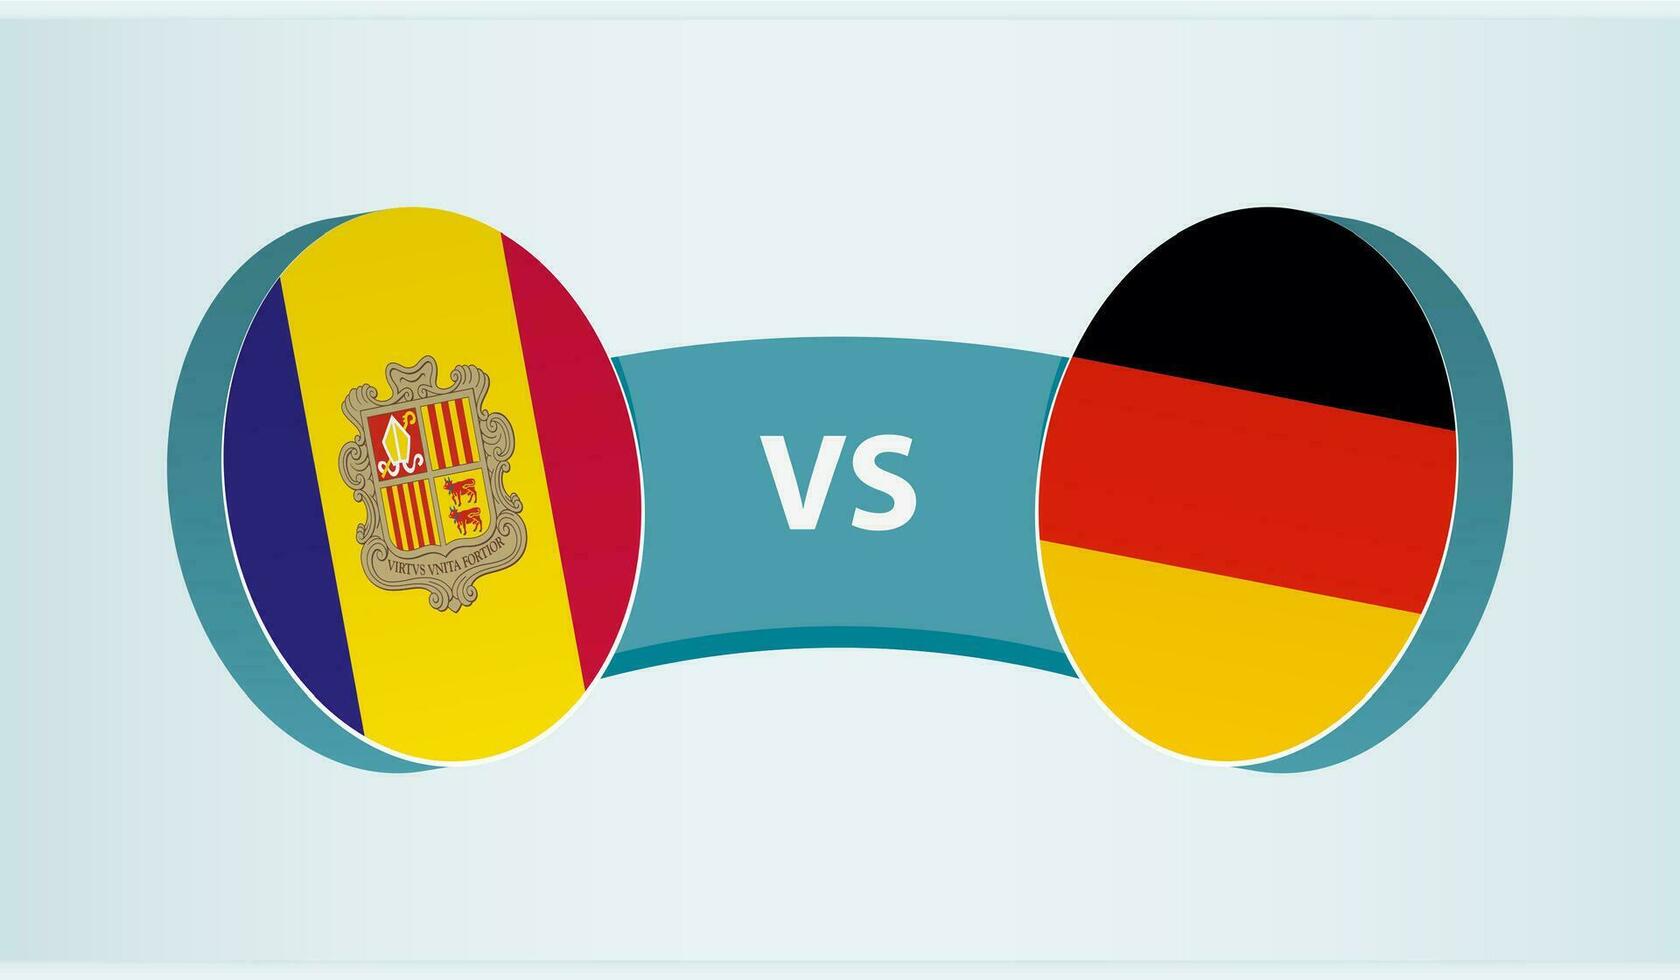 andorra mot Tyskland, team sporter konkurrens begrepp. vektor